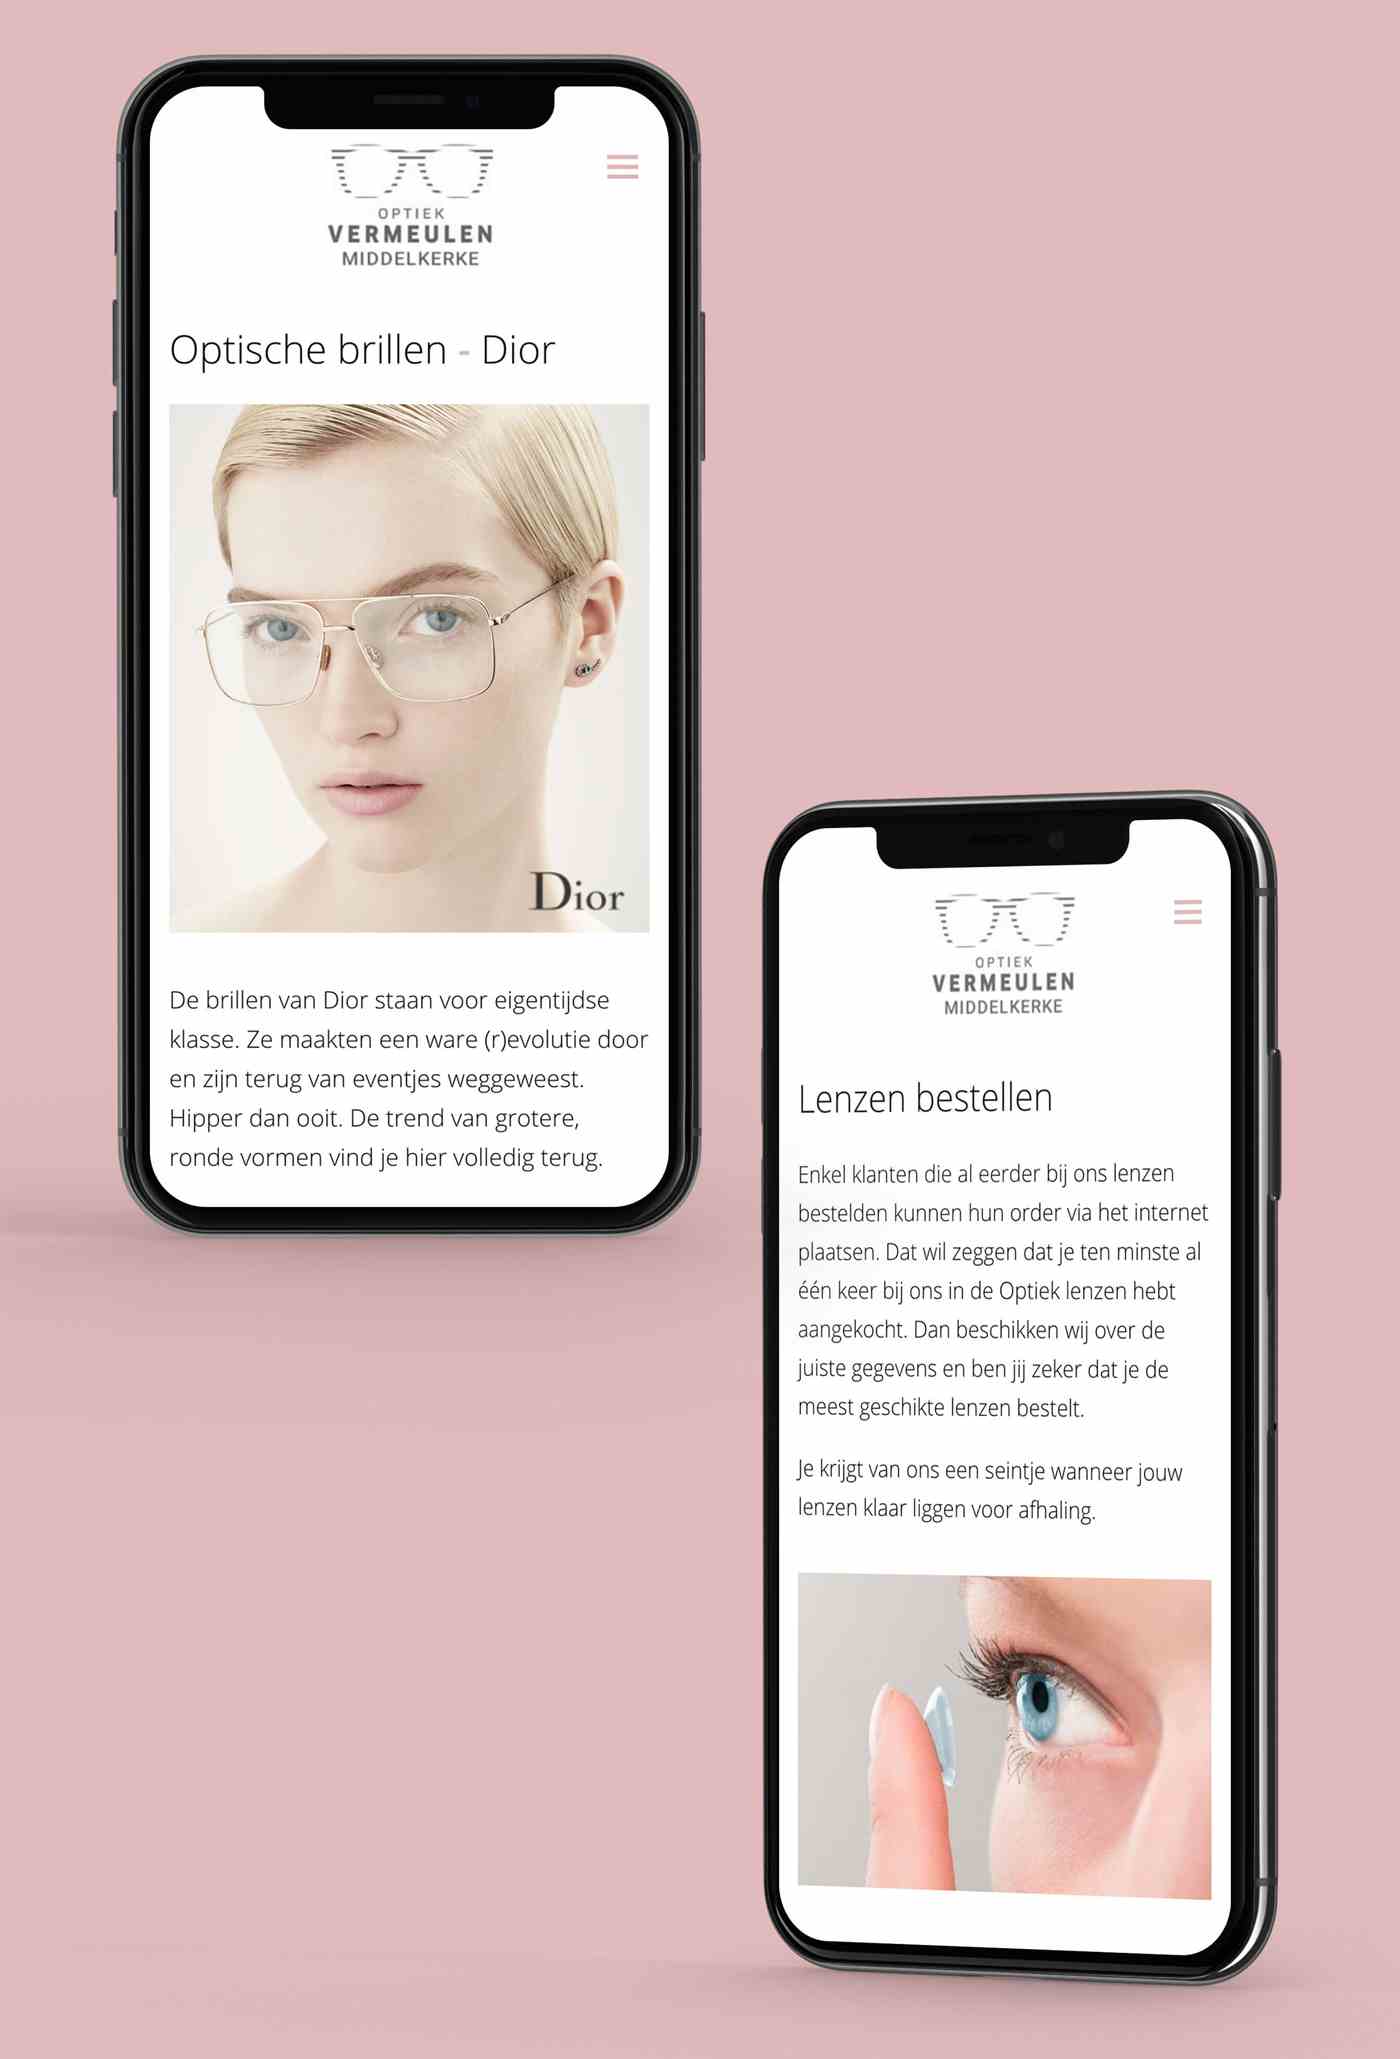 optiek-vermeulen-middelkerke-website-smartphone-2